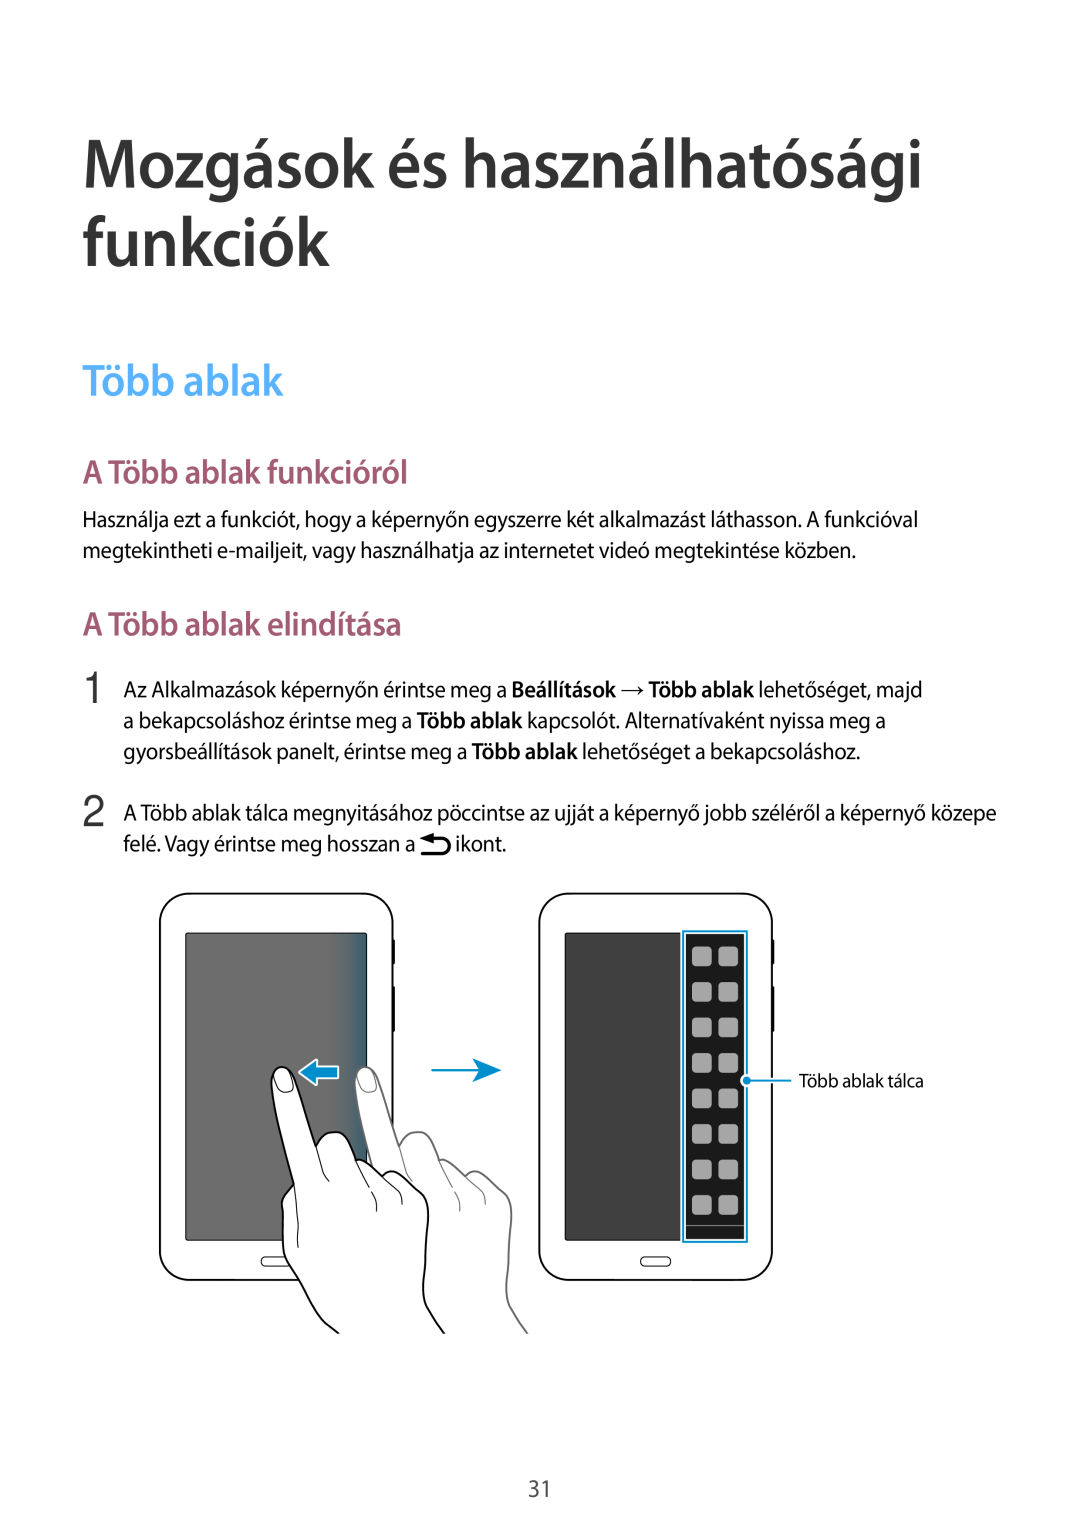 Samsung SM-T113NYKAXSK manual A Több ablak funkcióról, A Több ablak elindítása, Mozgások és használhatósági funkciók 